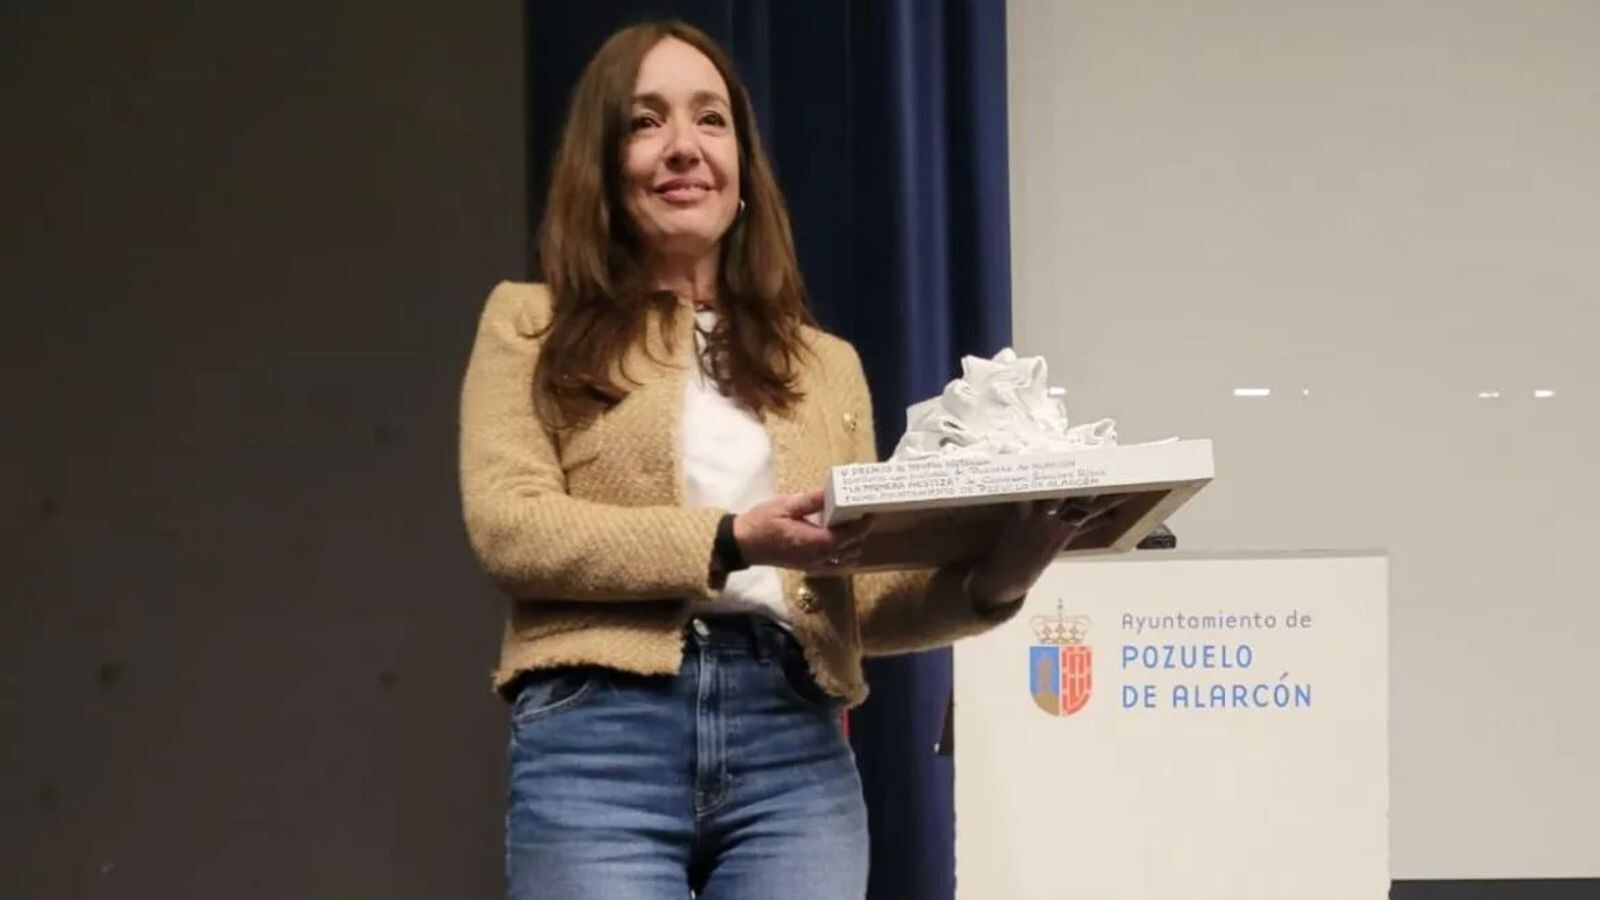 Carmen Sánchez Risco gana el V Premio de Novela Histórica de Pozuelo con su obra “La Primera Mestiza”